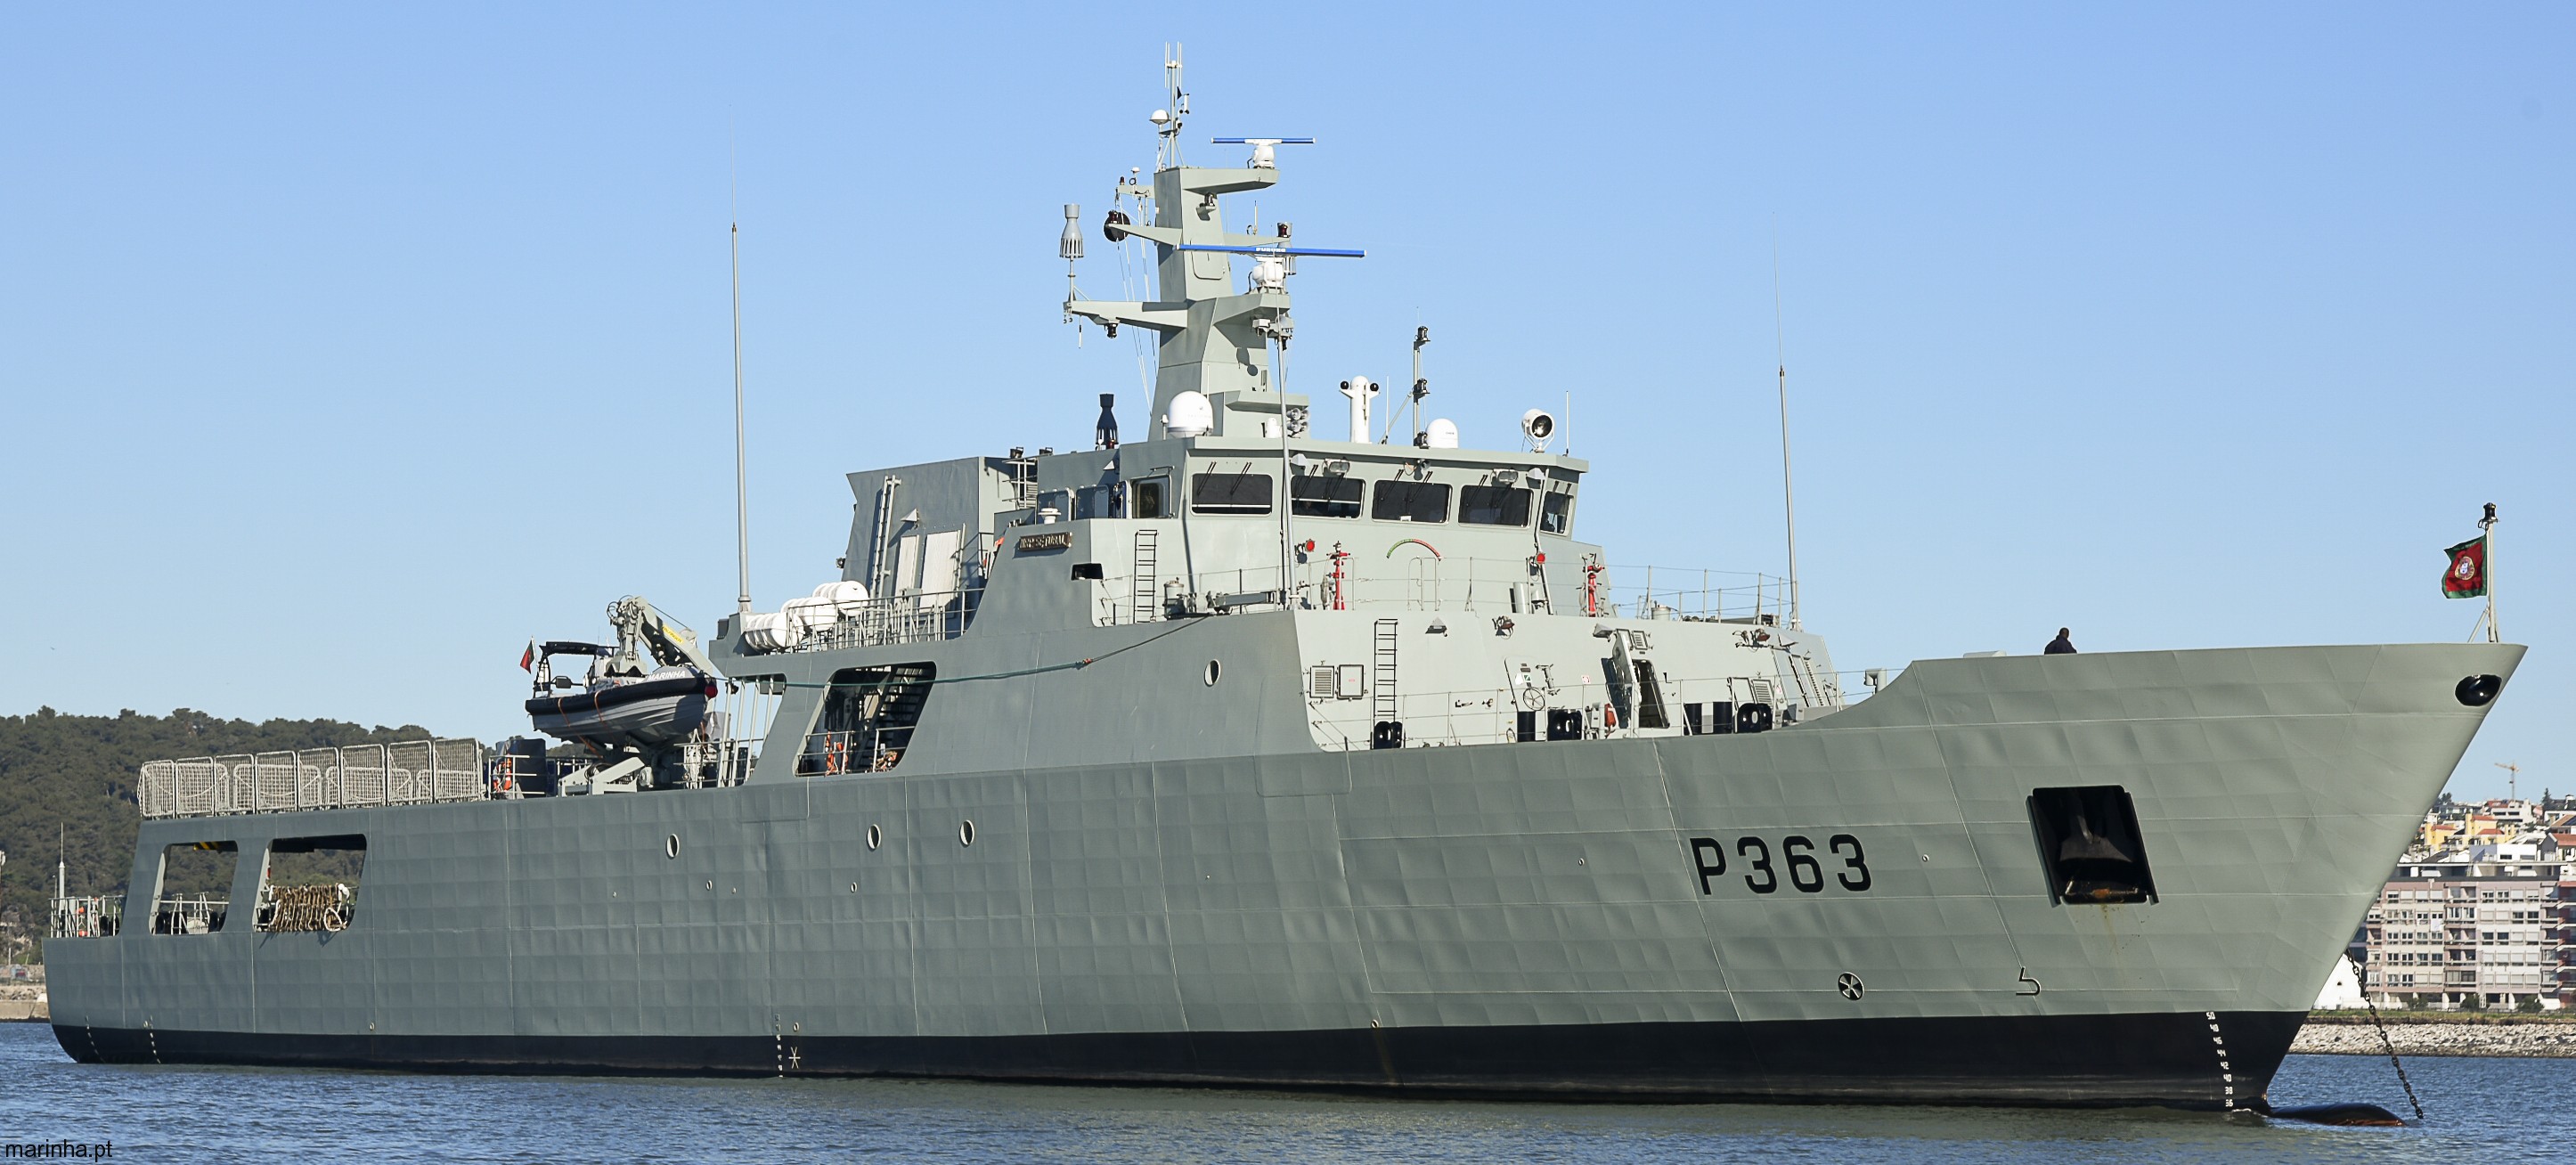 p-363 nrp setubal viana do castelo class offshore patrol vessel opv portuguese navy marinha 05